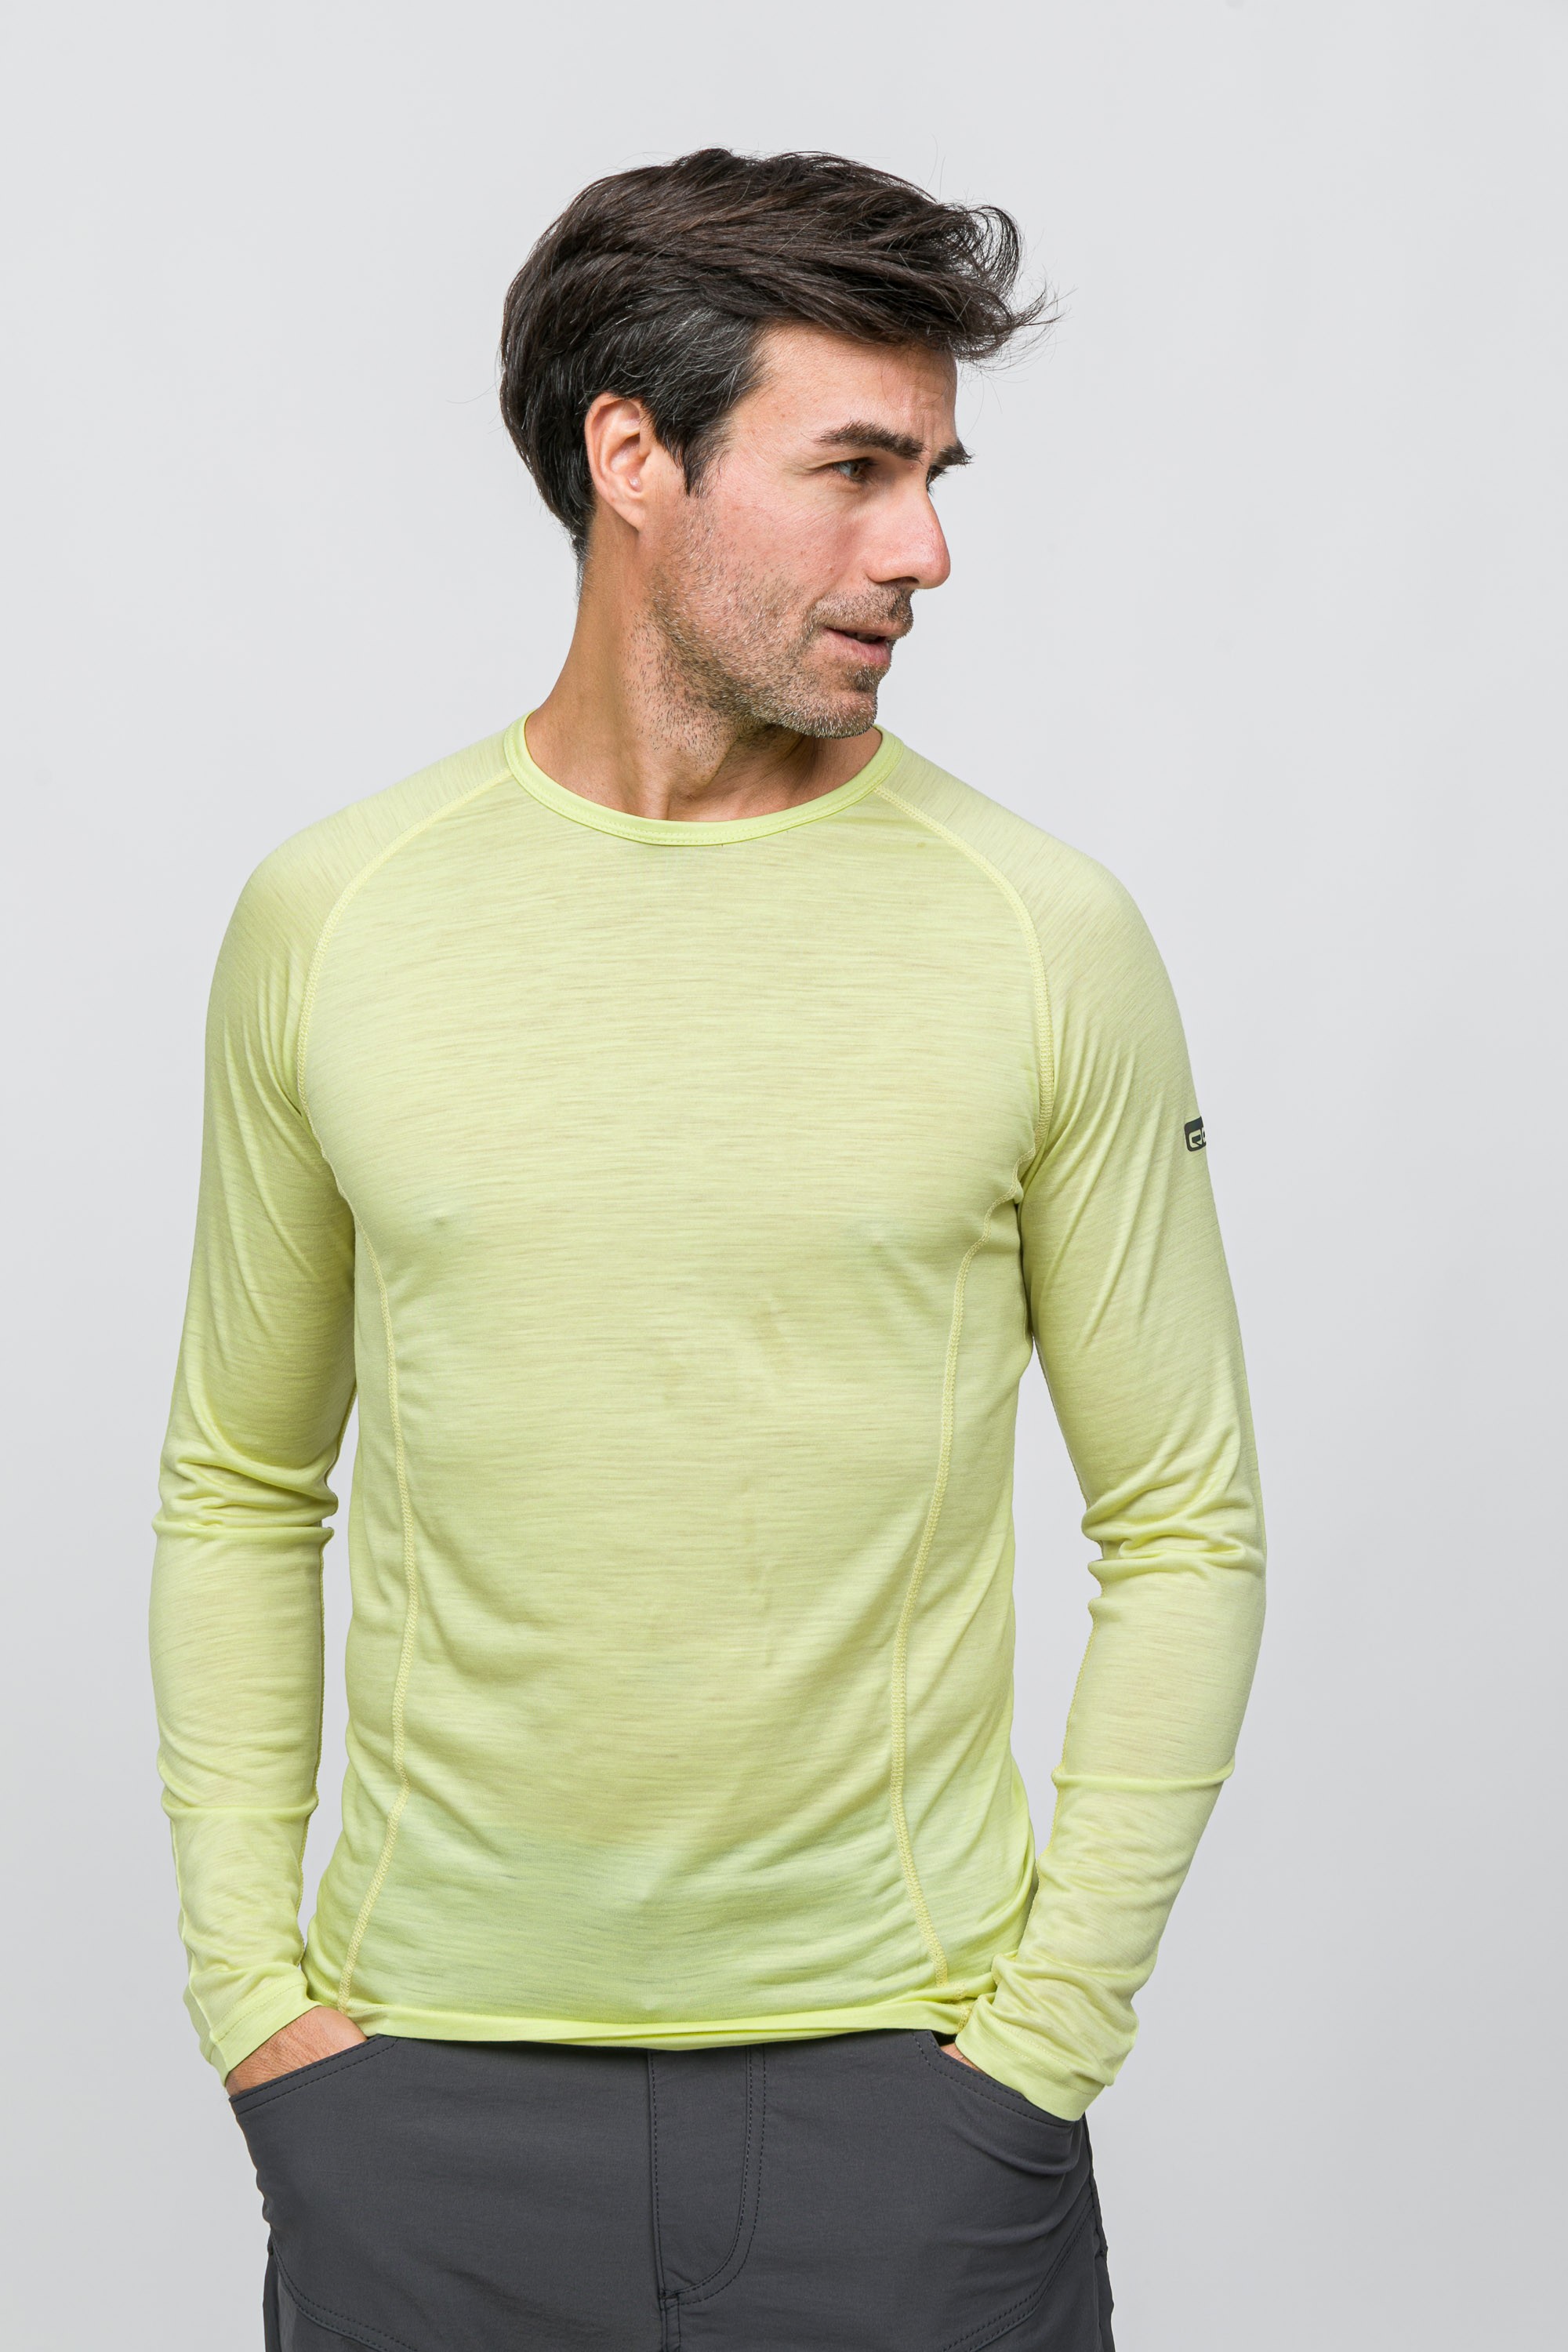 Erkek All-Season Merino Uzun Kollu T-Shirt 135 gr - Lime